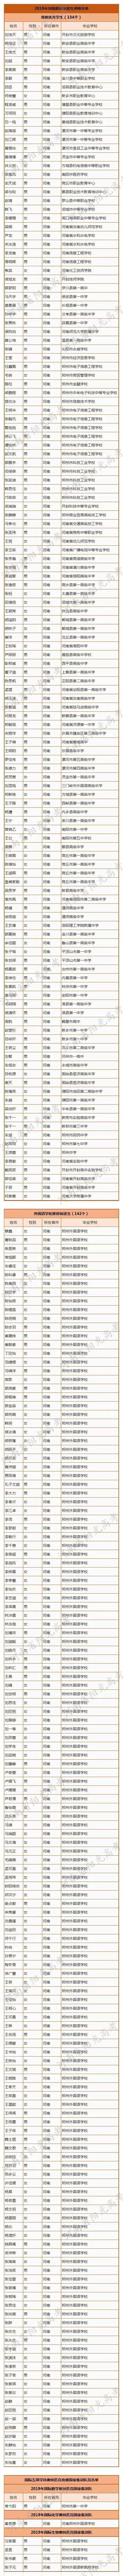 河南省保送生资格名单